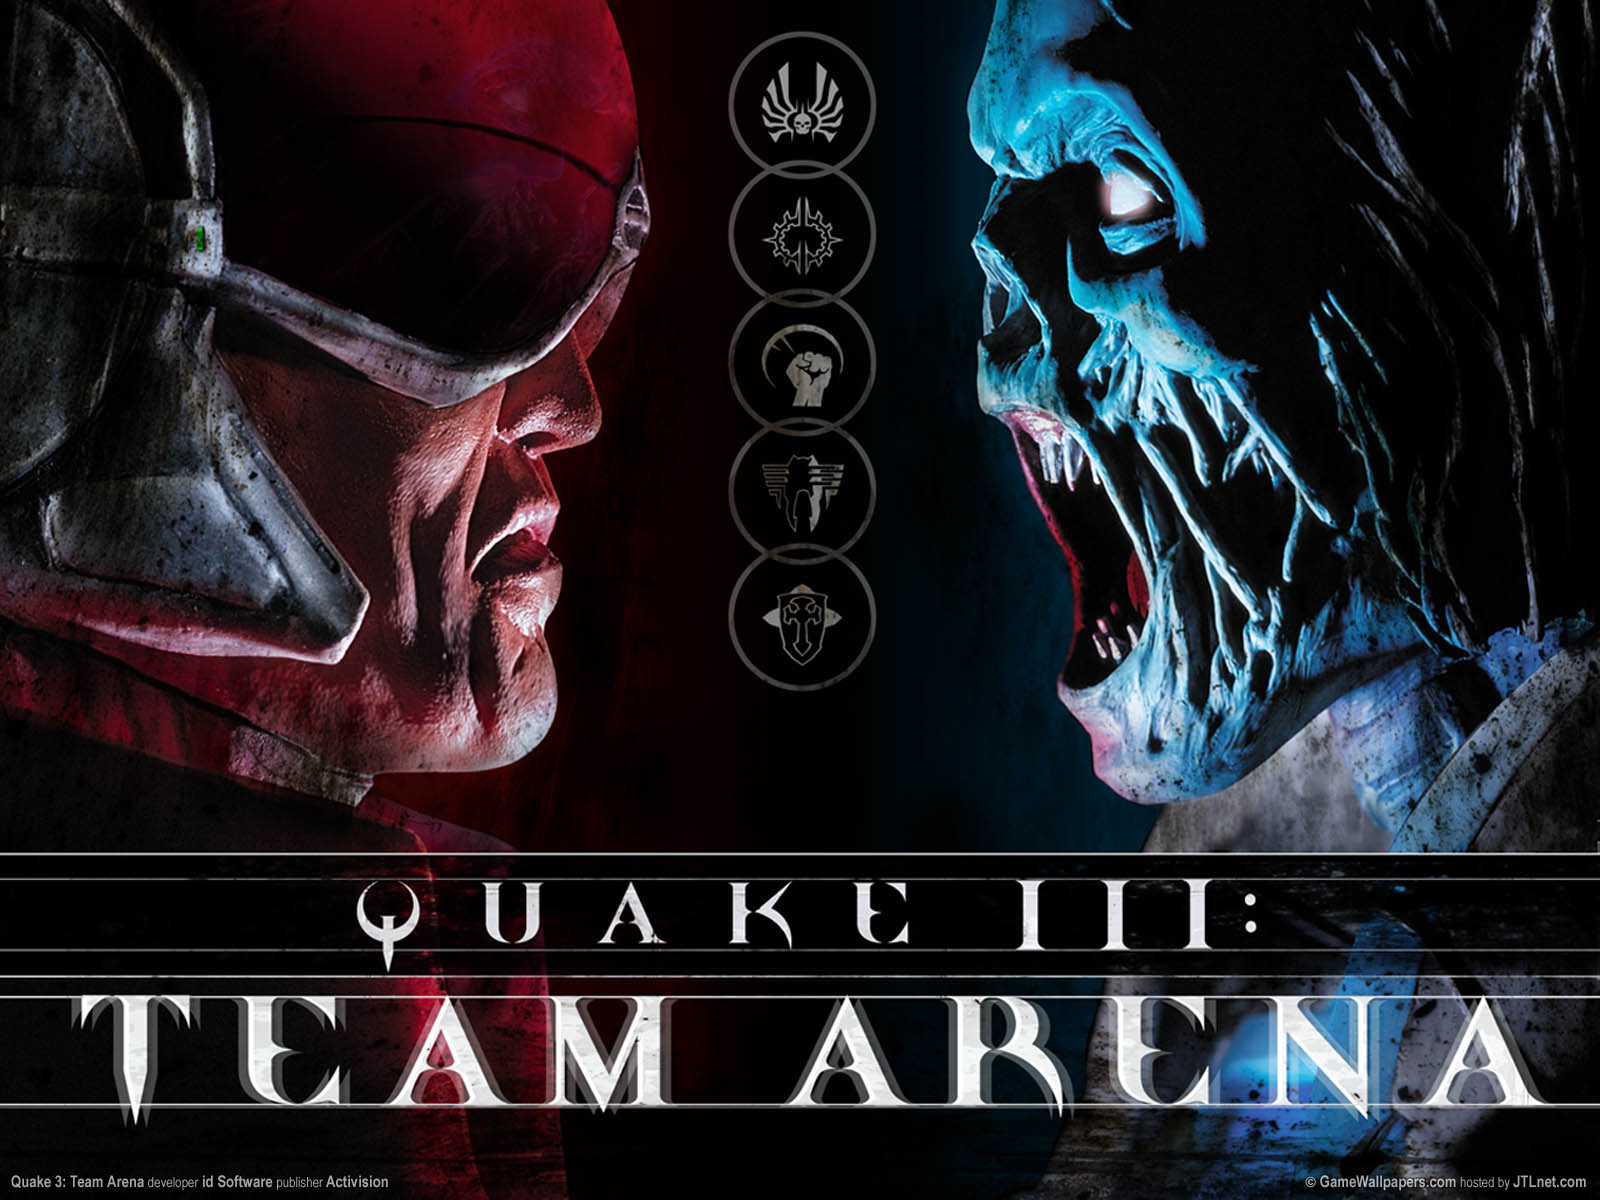 Quake 3: Team Arenaνmmer=01 fond d'cran  1600x1200